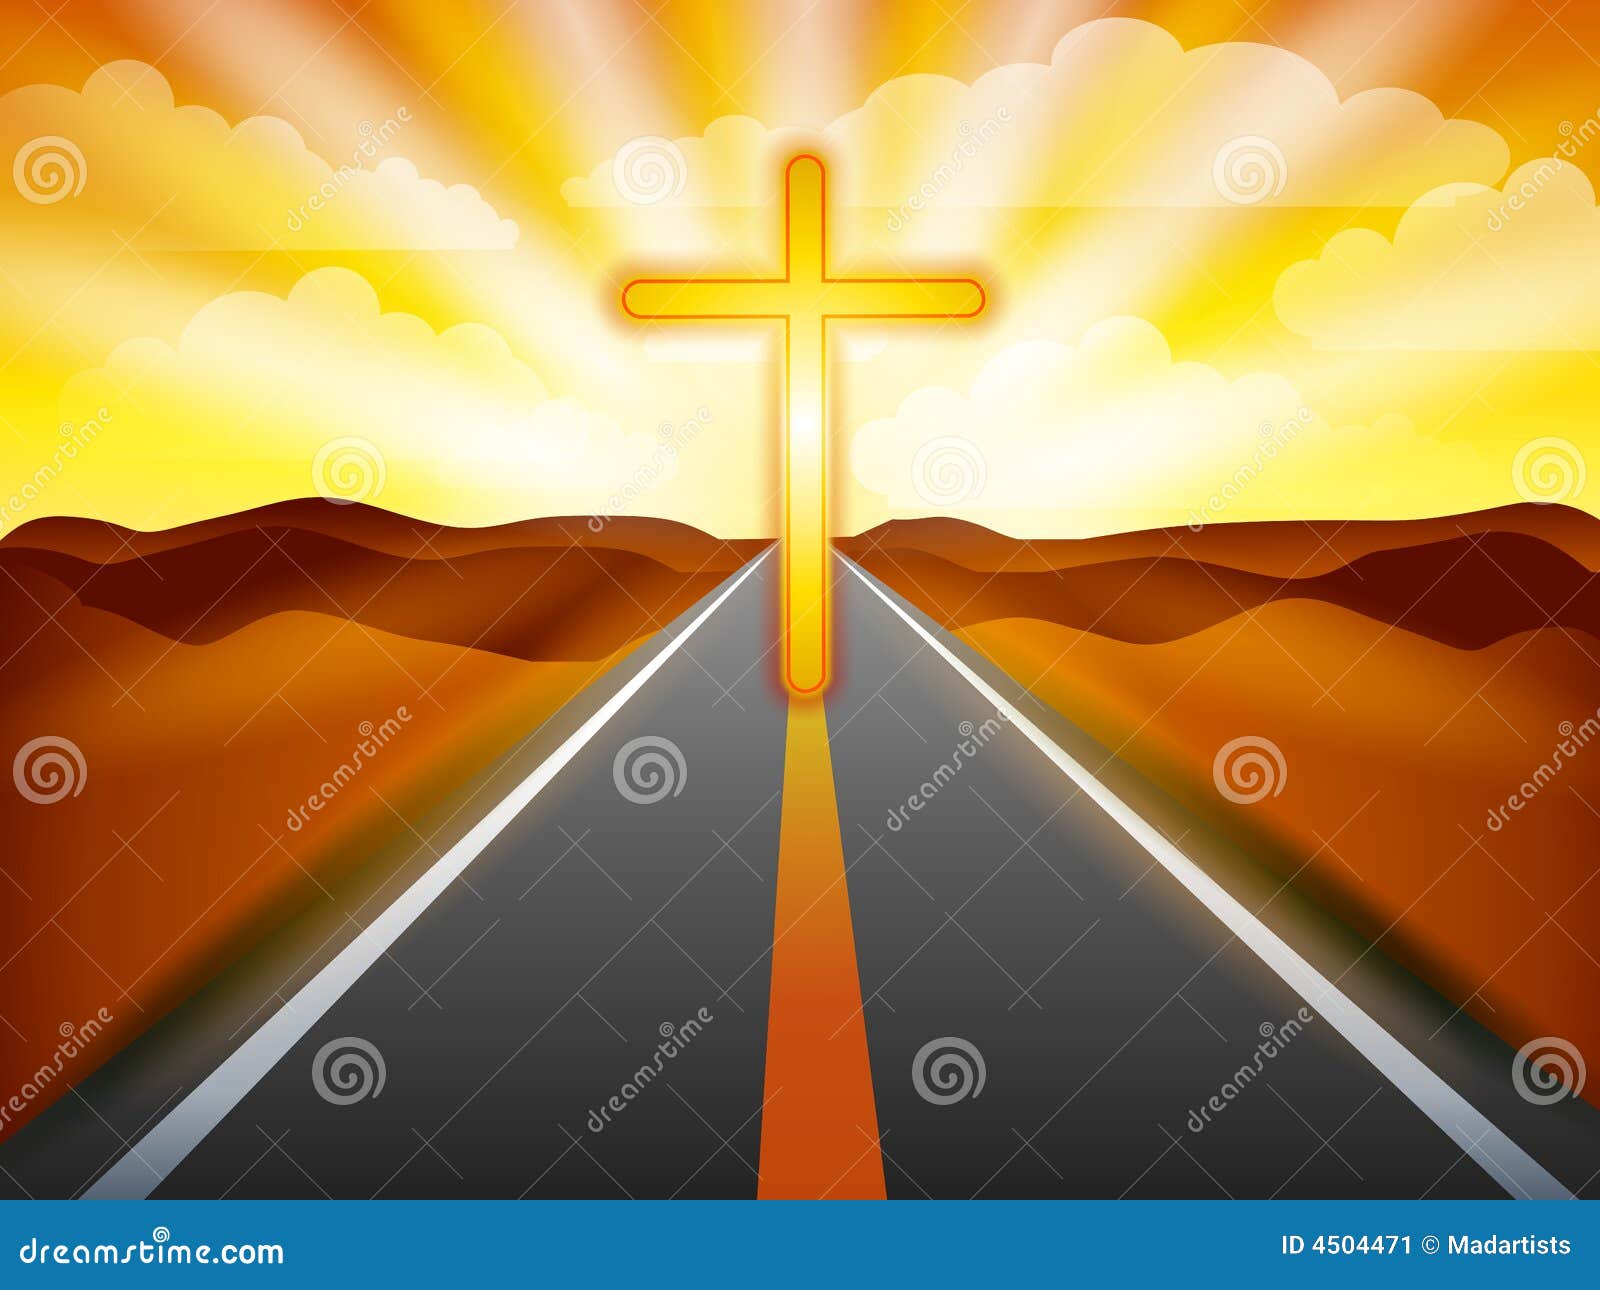 Redemption At Sunset: A Digital Art Illustration Of Jesus Christ On The ...